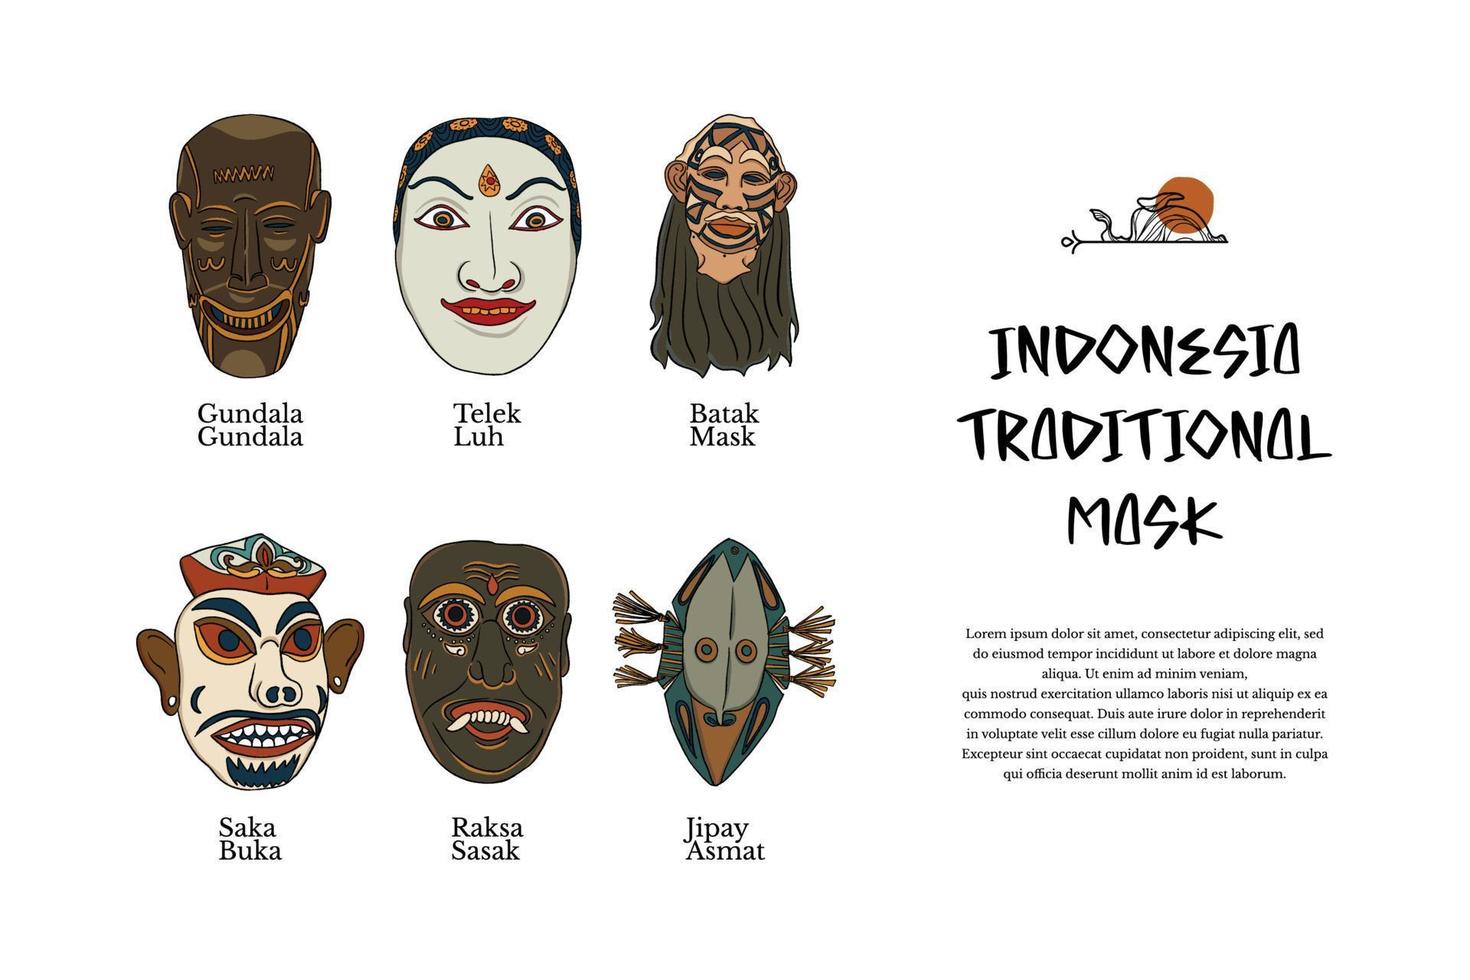 isolierte indonesische traditionelle maskenkultur handgezeichnete illustrationsdesigninspiration vektor